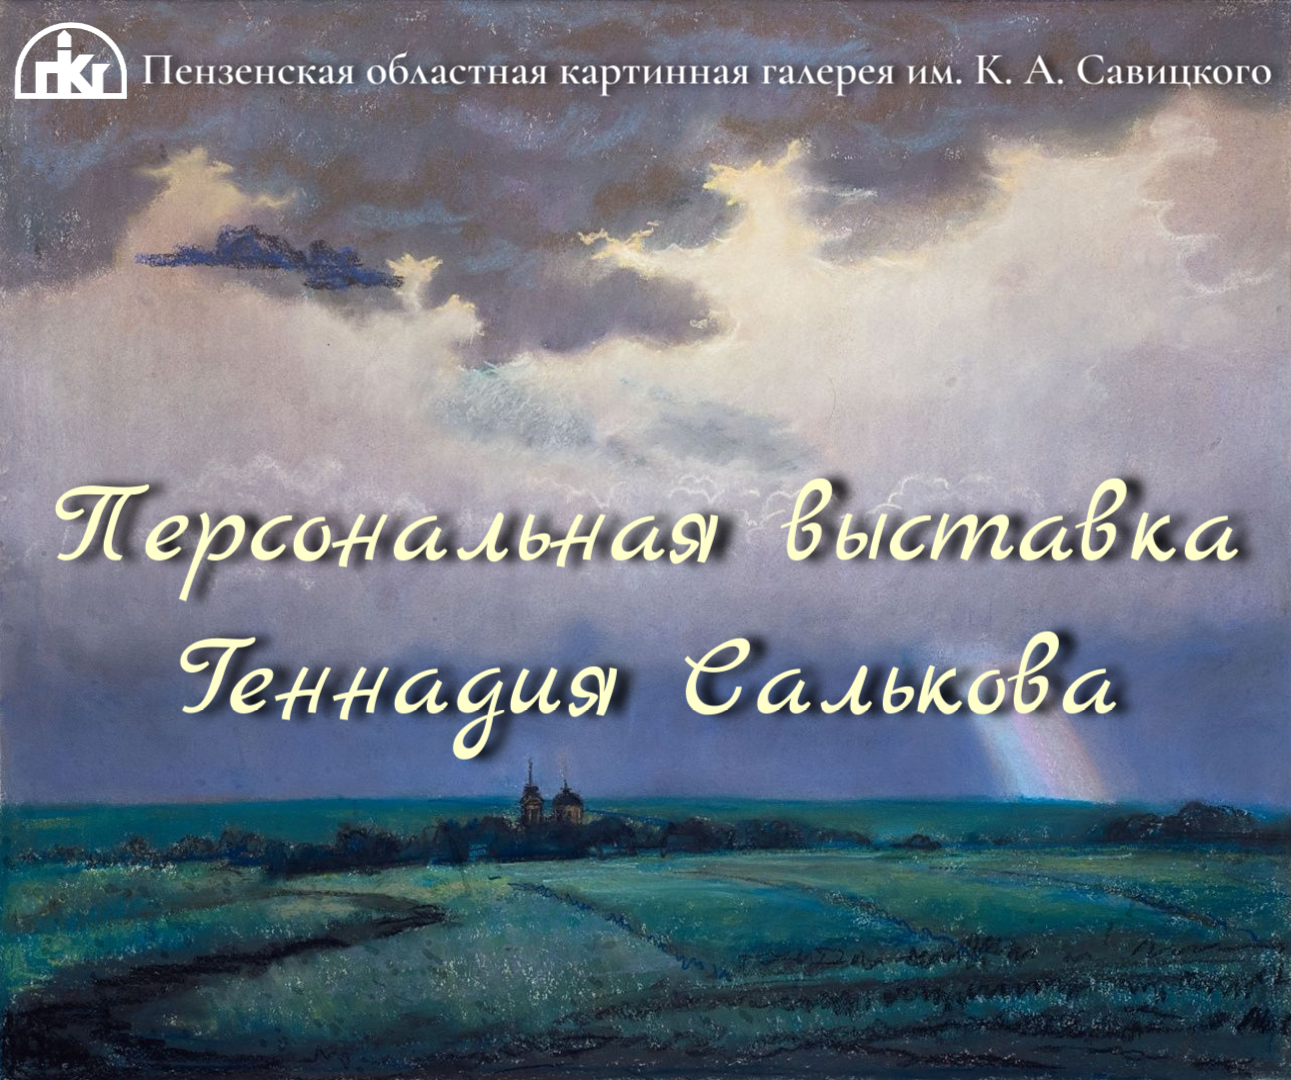 Персональная выставка Геннадия Салькова в Пензенской картинной галерее